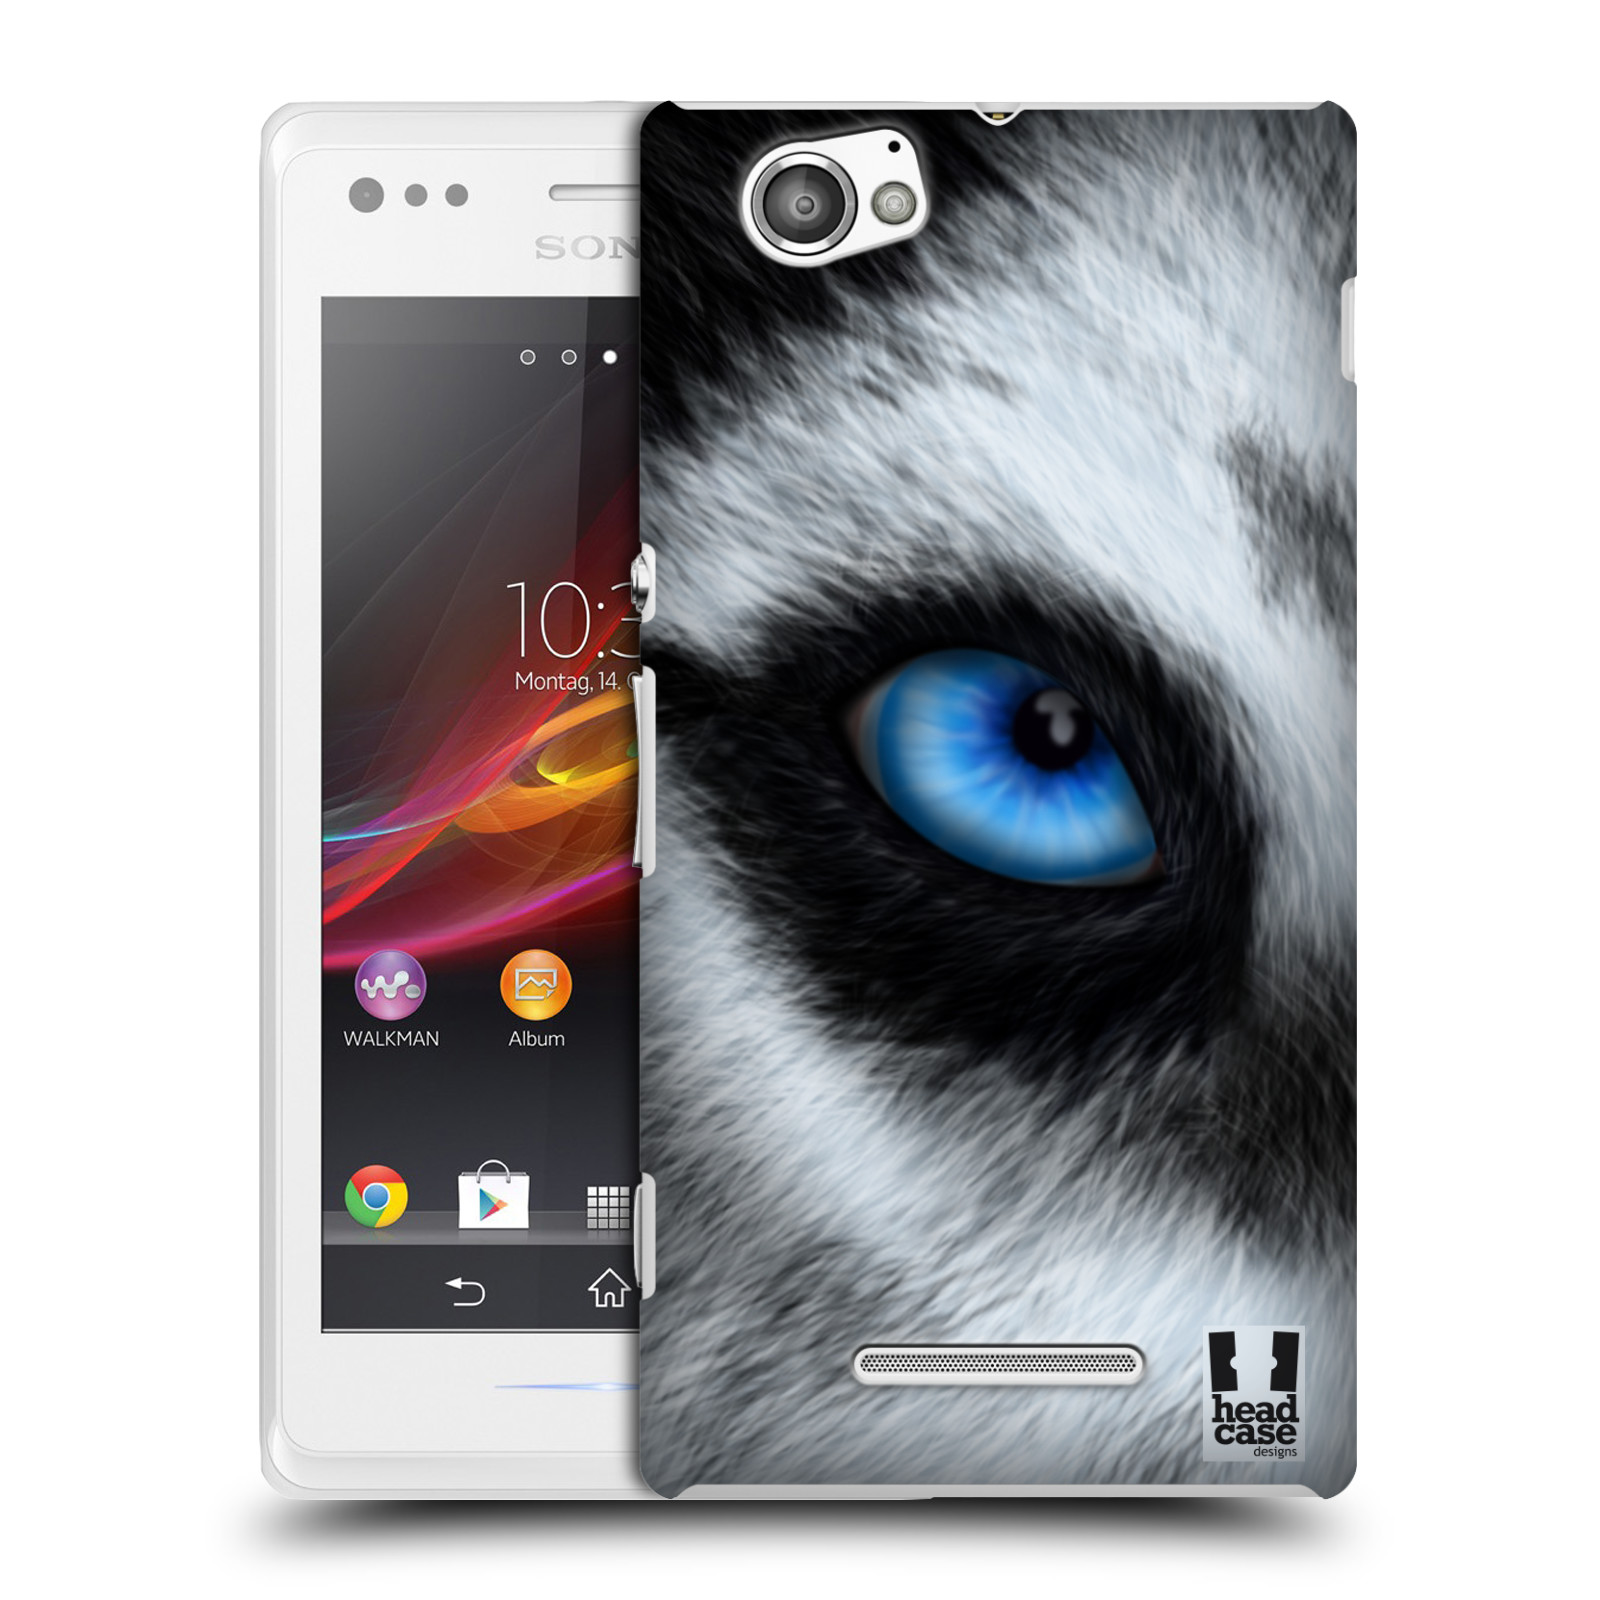 HEAD CASE plastový obal na mobil Sony Xperia M vzor pohled zvířete oko pes husky